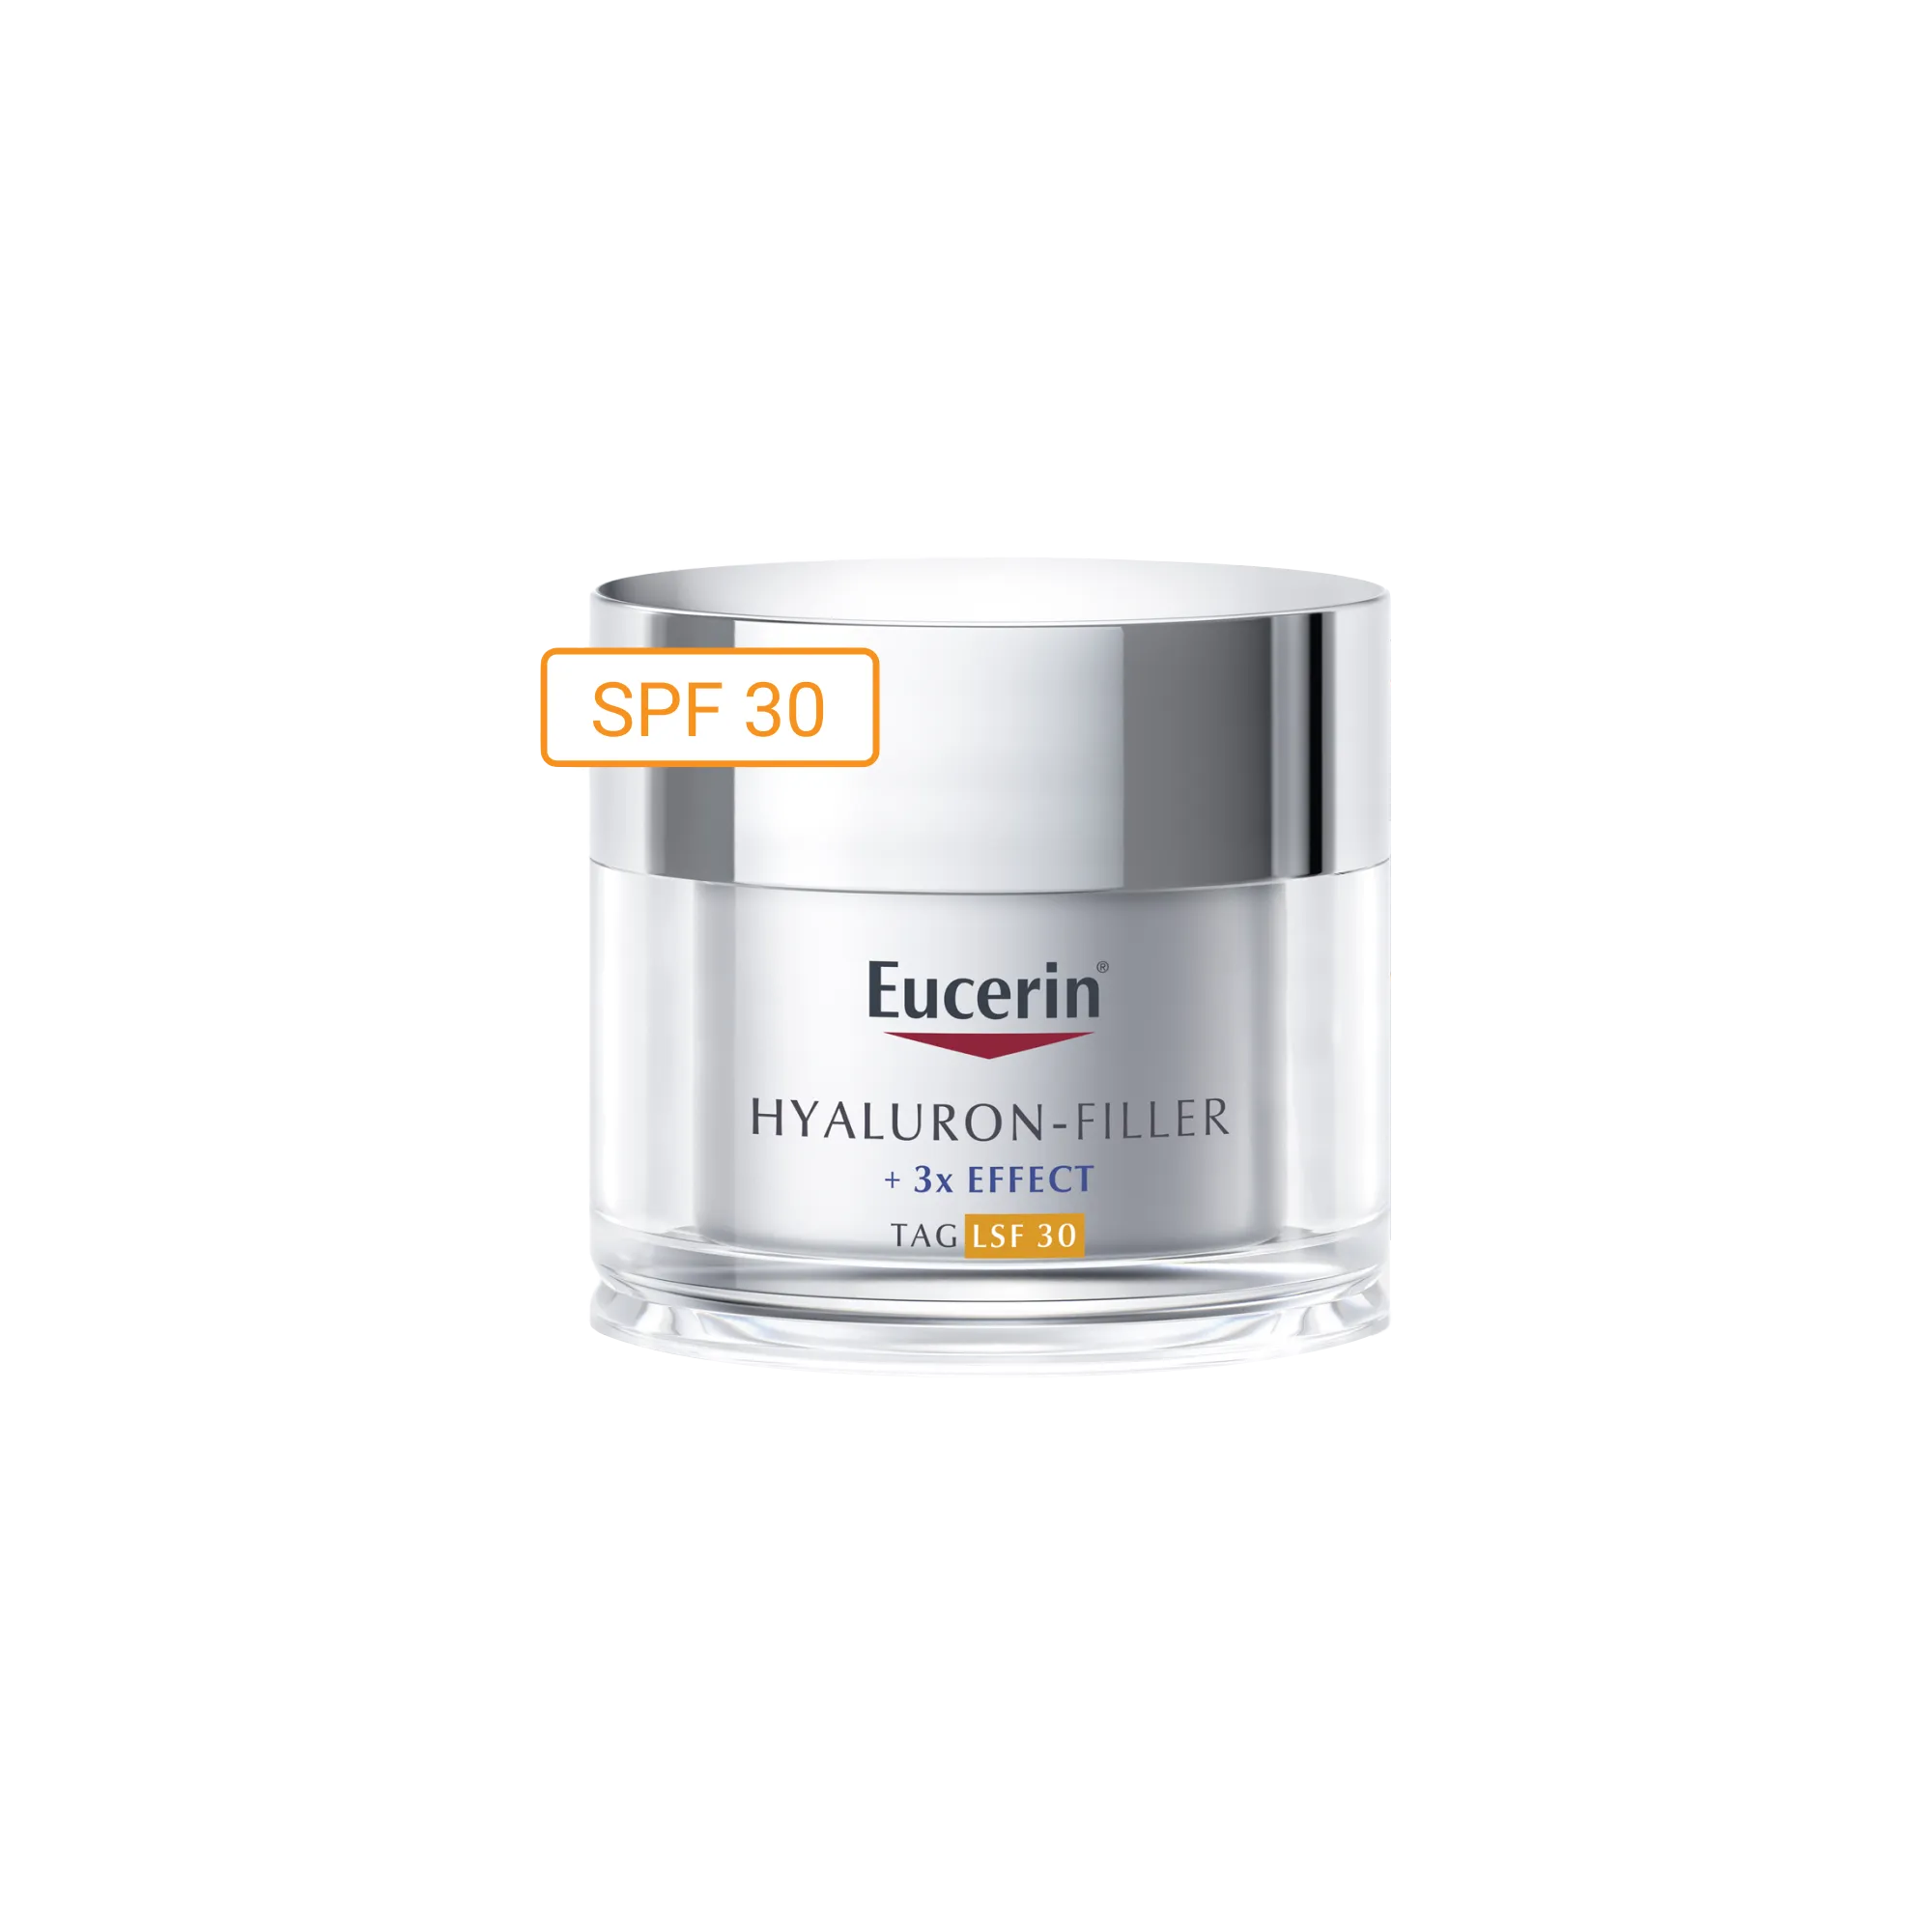 Eucerin Hyaluron-Filler przeciwzmarszczkowy krem na dzień do każdego typu skóry SPF 30, 50 ml